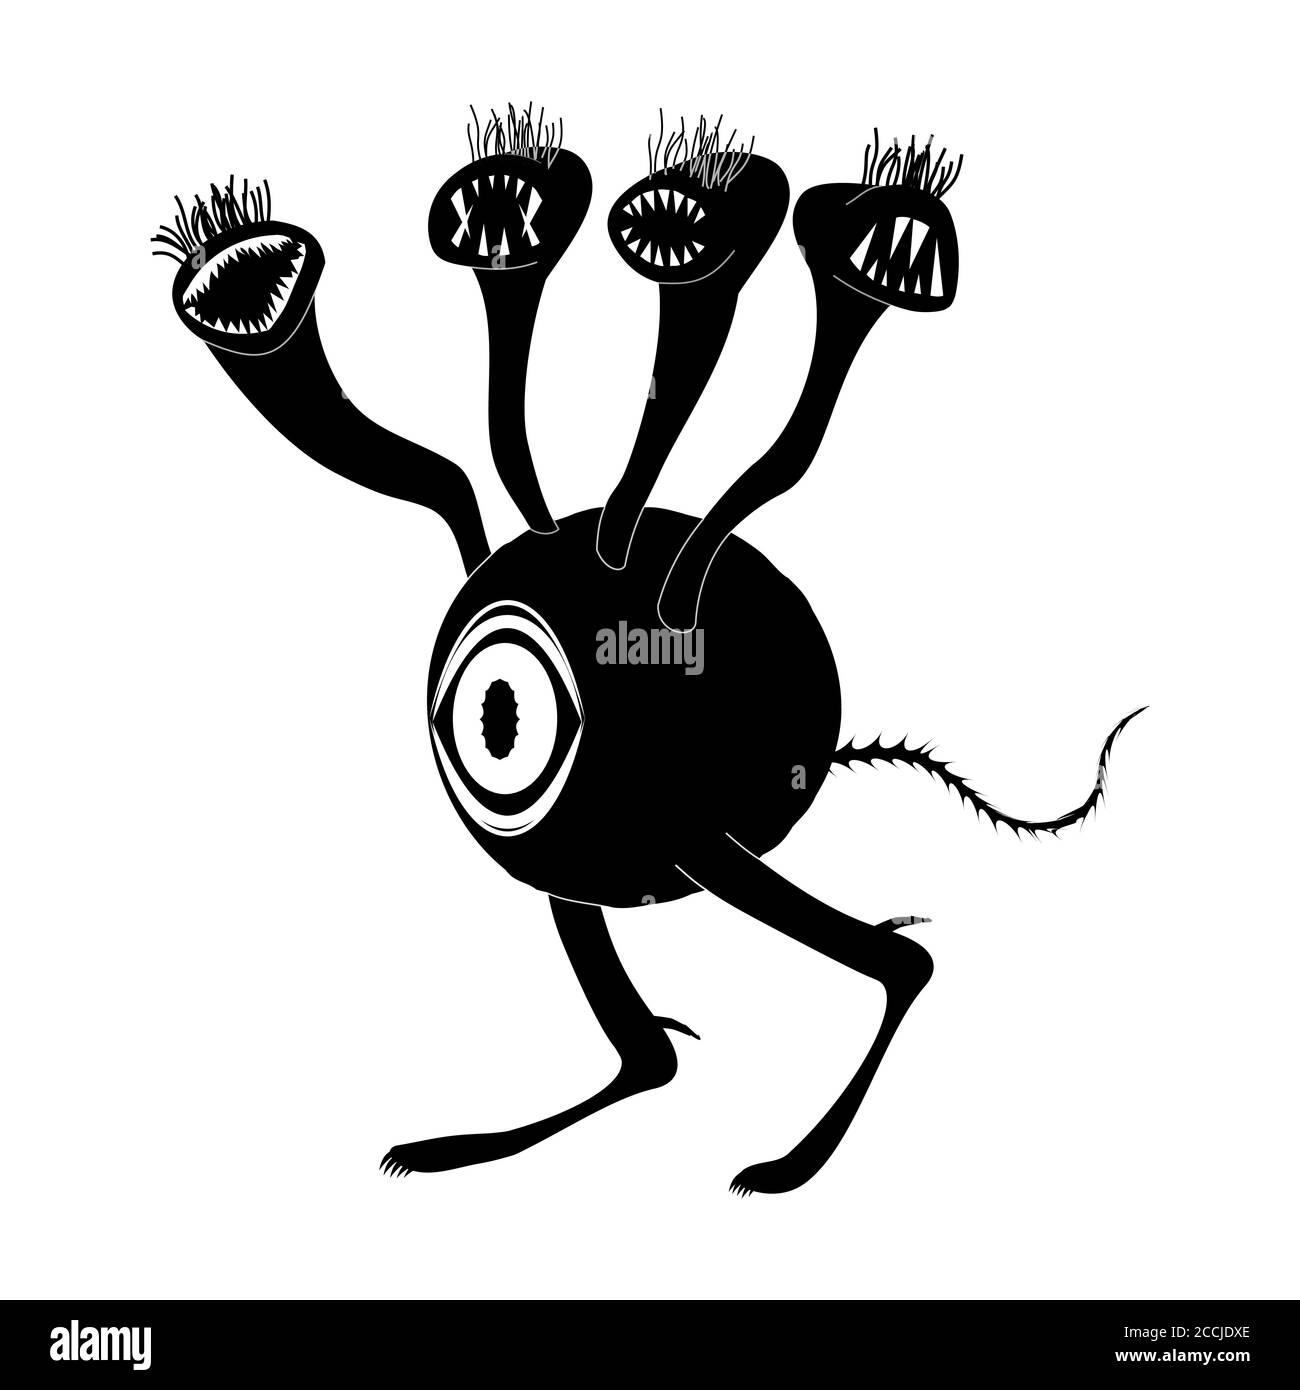 Un concetto di una creatura aliena con un occhio grande e molte teste toothy. Critter cammina su due gambe. Immagine silhouette. Vettore isolato su un backgro bianco Illustrazione Vettoriale